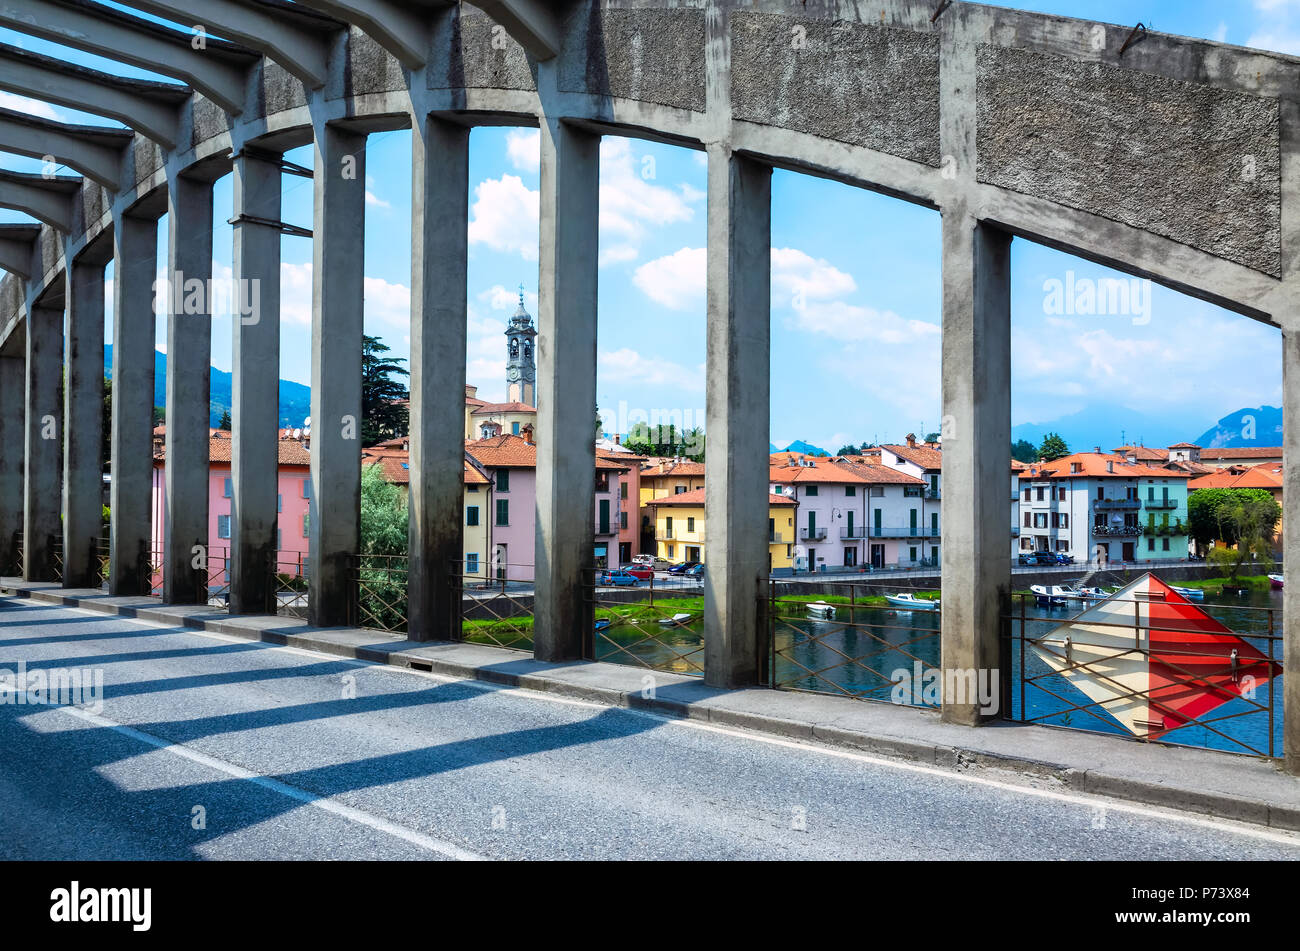 Ponte sul fiume Adda a Brivio, Lecco, Lombardia, Italia Foto Stock